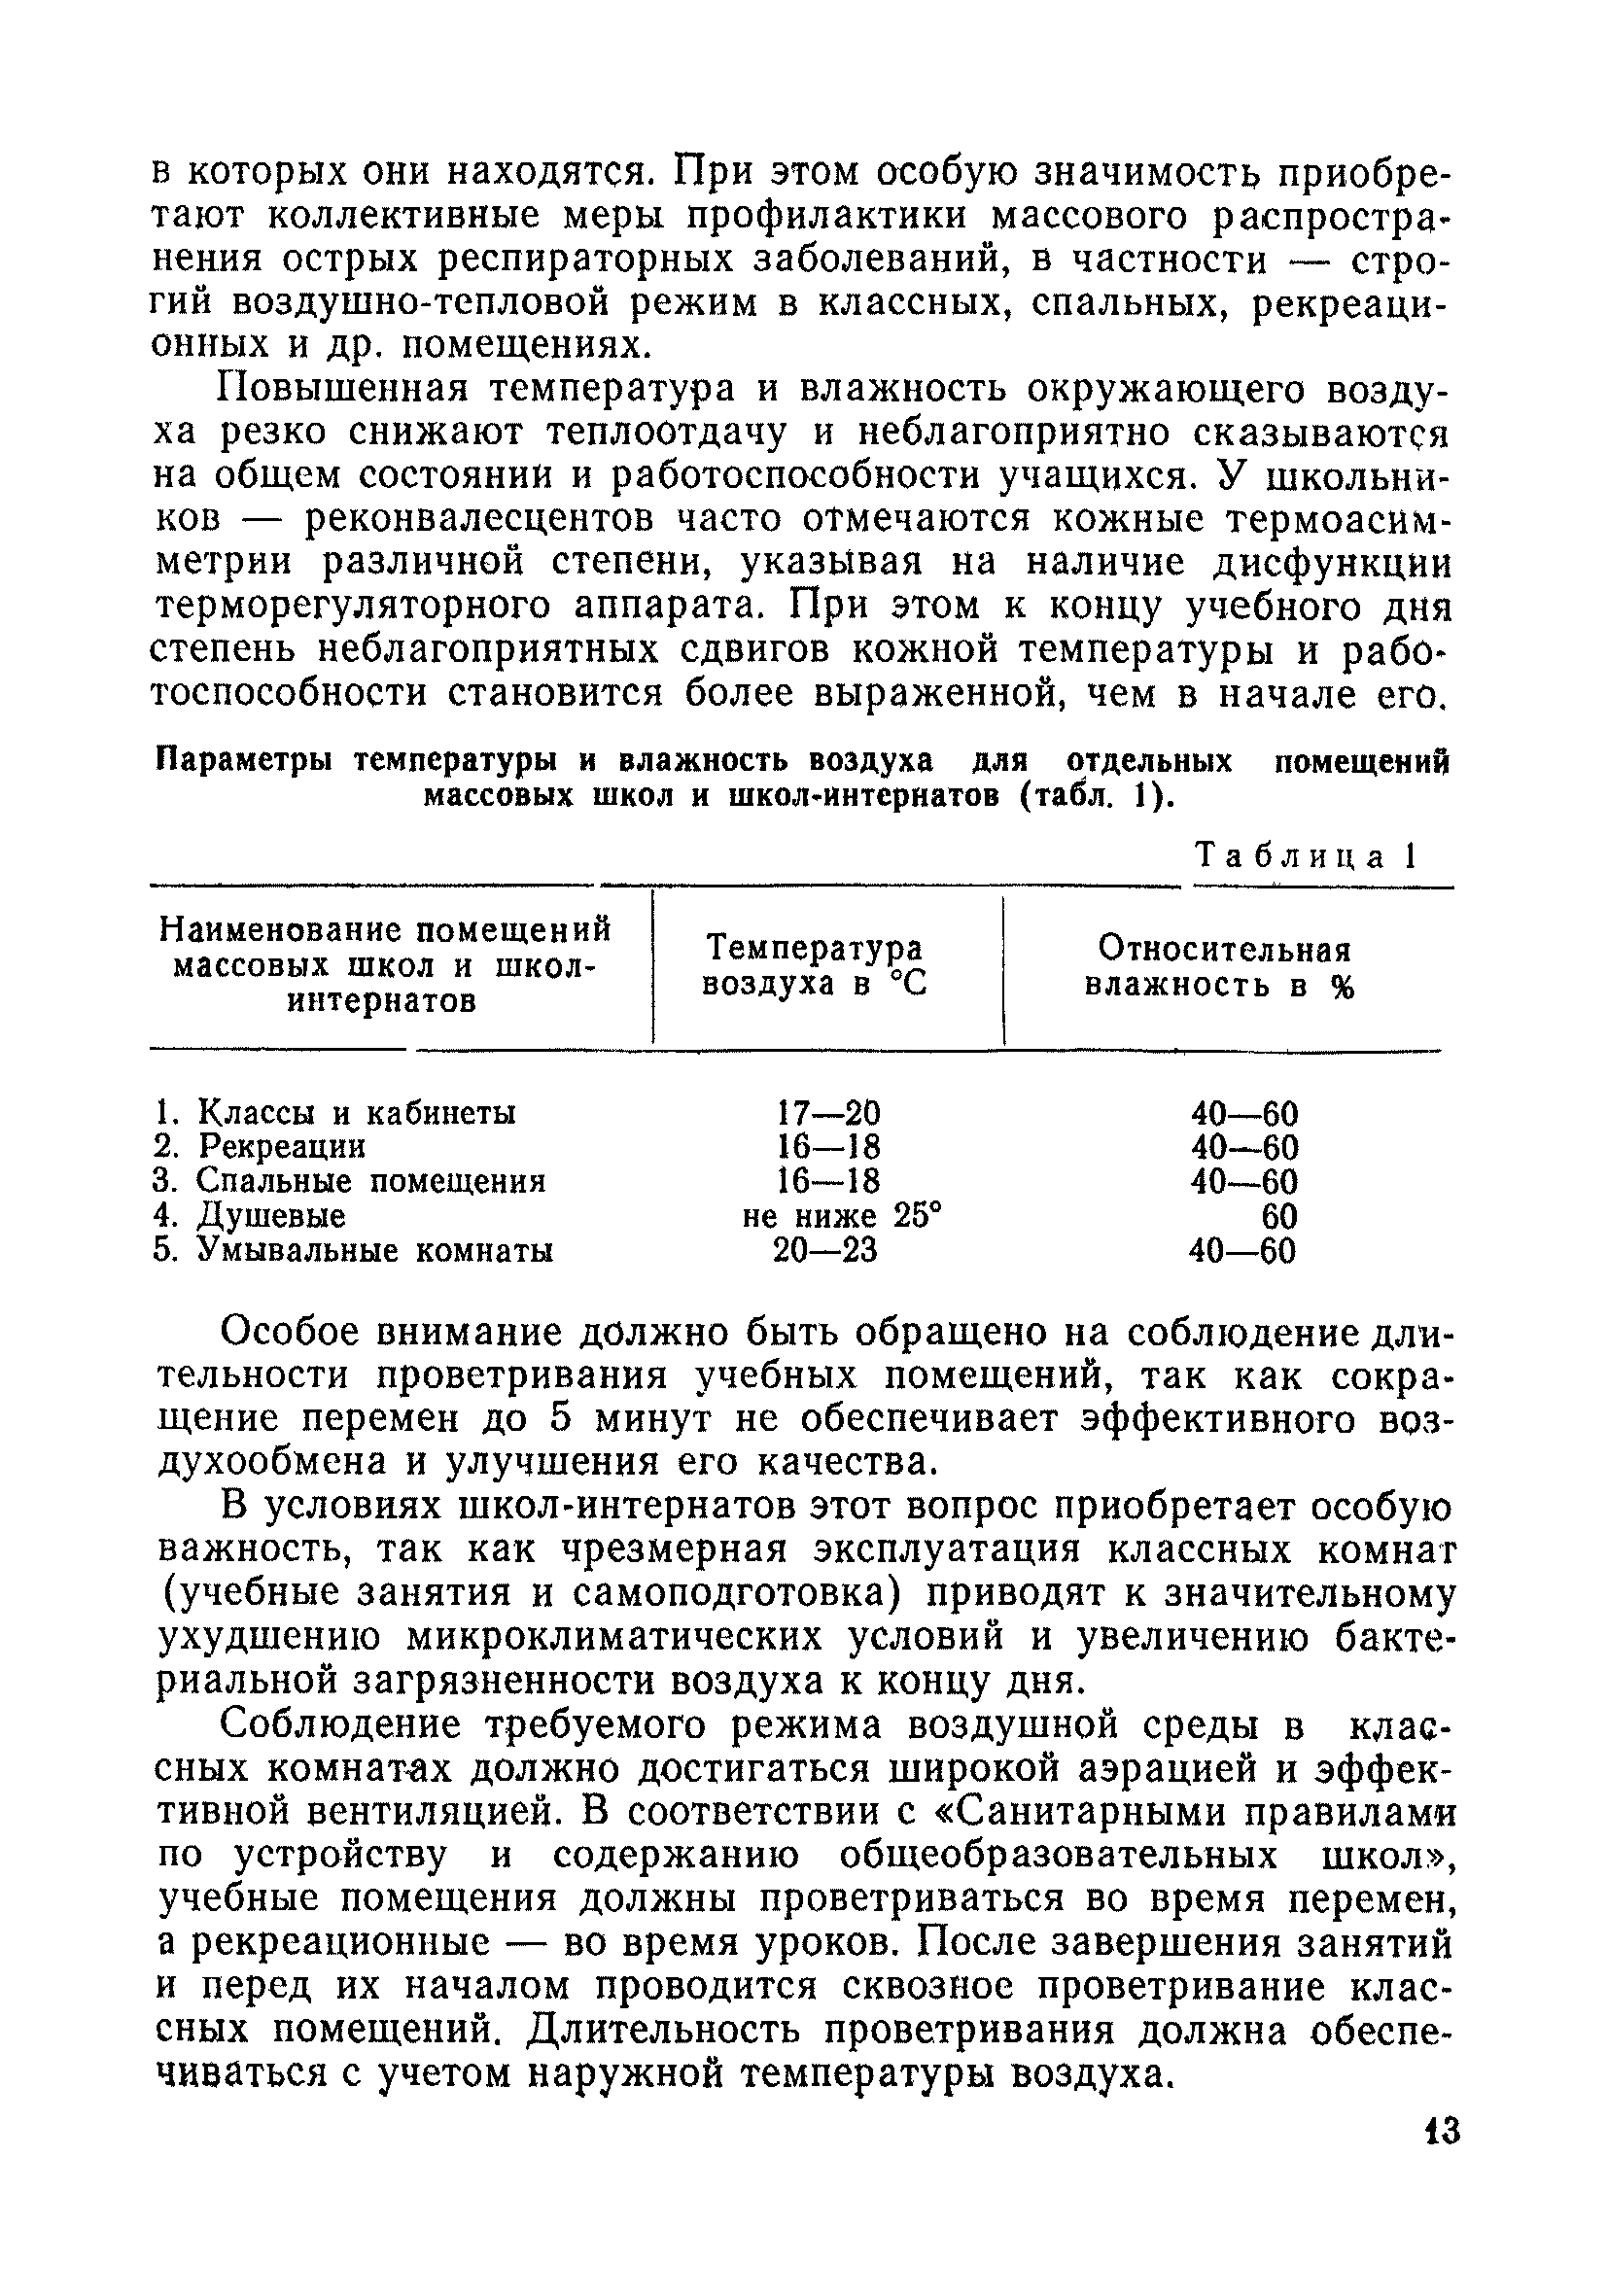 Методические рекомендации 11-52/6